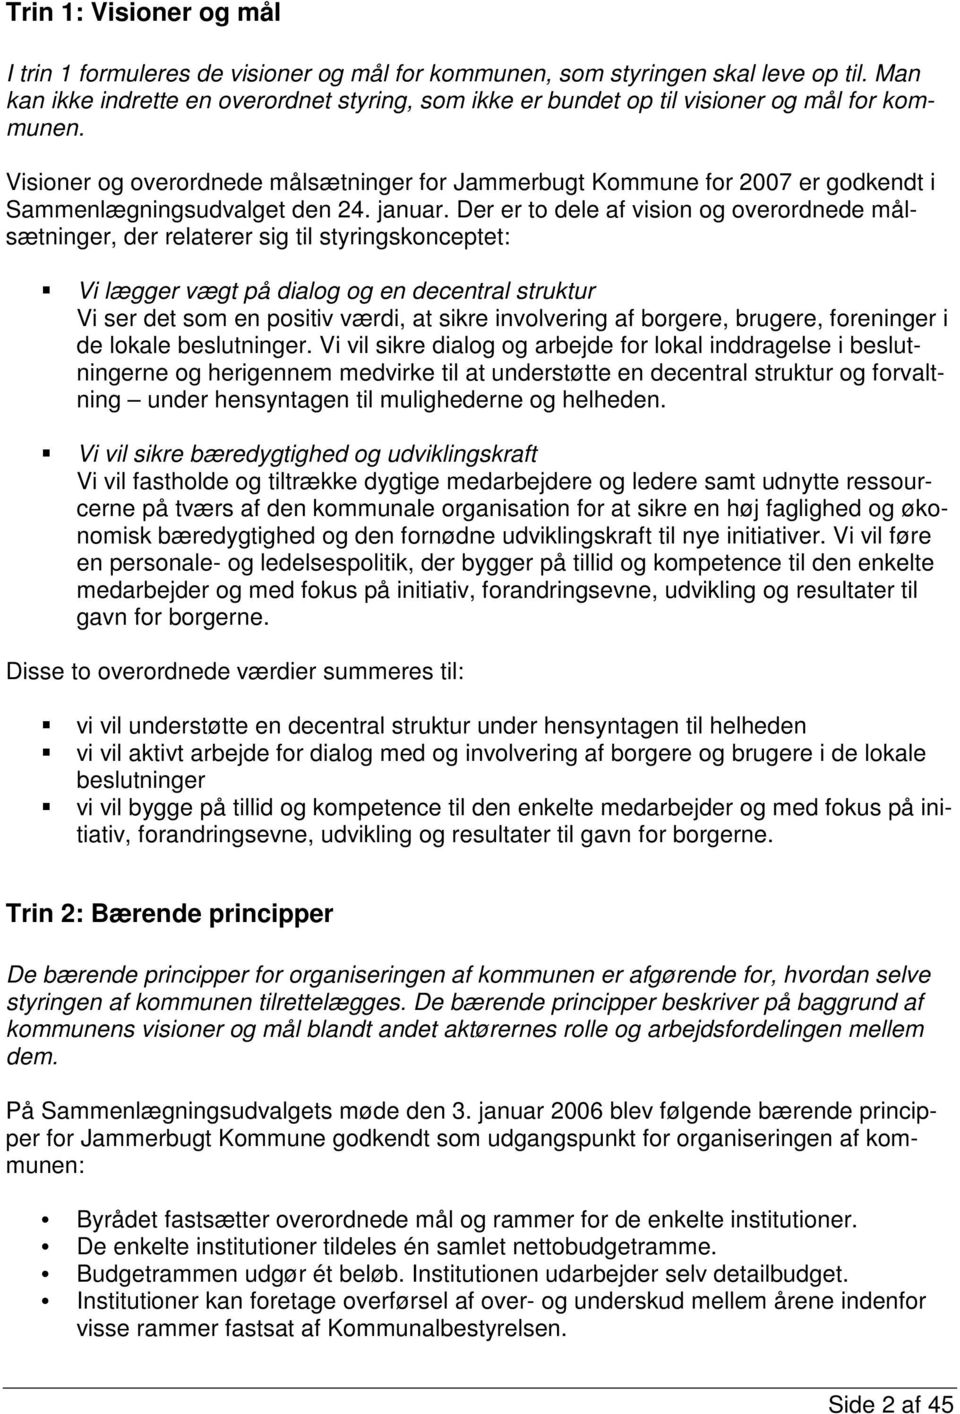 Visioner og overordnede målsætninger for Jammerbugt Kommune for 2007 er godkendt i Sammenlægningsudvalget den 24. januar.